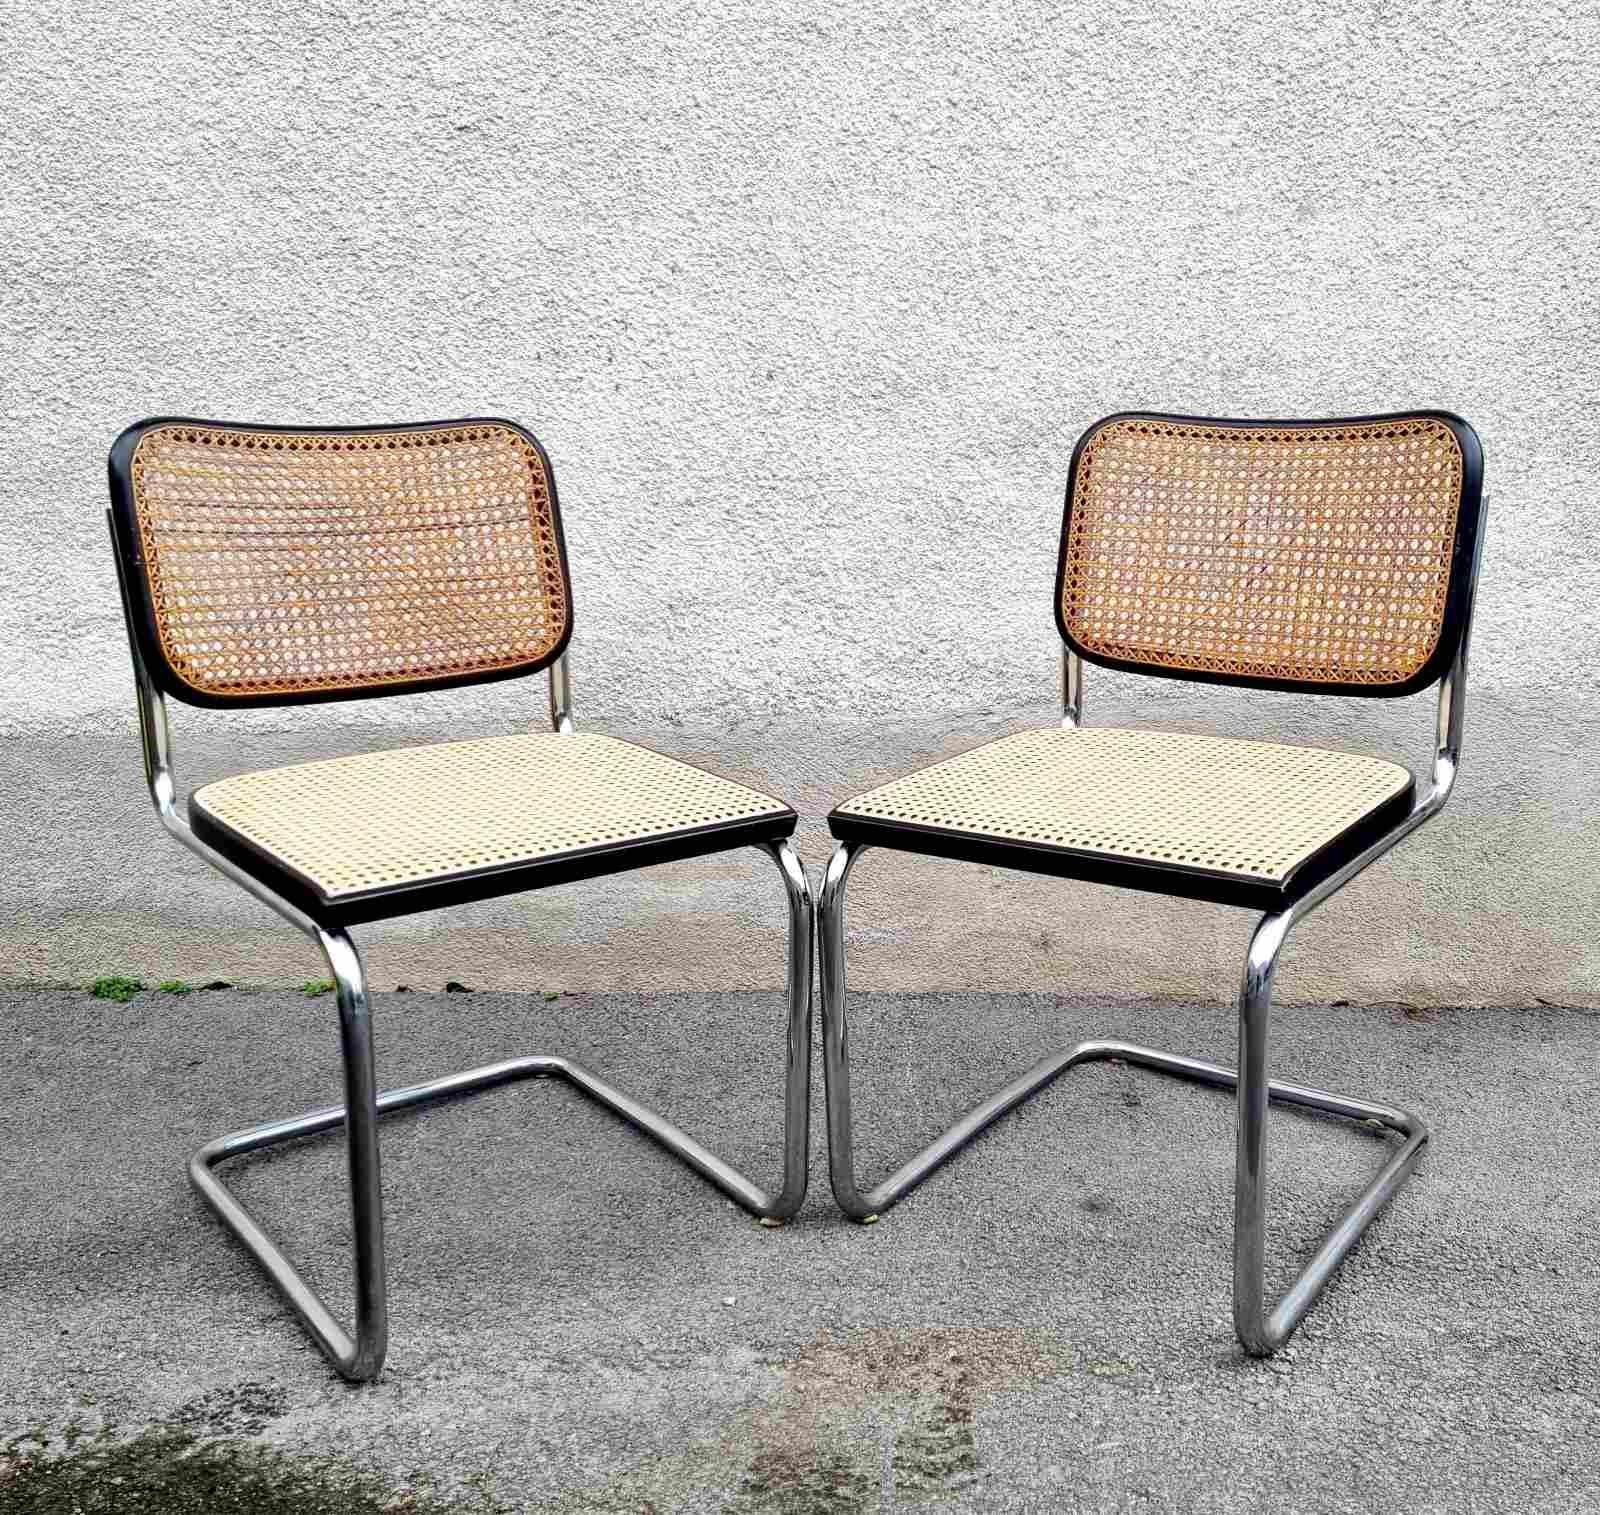 Dieses Paar Cesca-Stühle von Marcel Breuer wurde in den 60er Jahren von Gavina in Italien hergestellt. 
Die Stühle sind beschriftet
Es ist ein fabelhaftes, ikonisches Möbelstück, auf dem man auch sehr bequem sitzen kann. Er eignet sich perfekt für